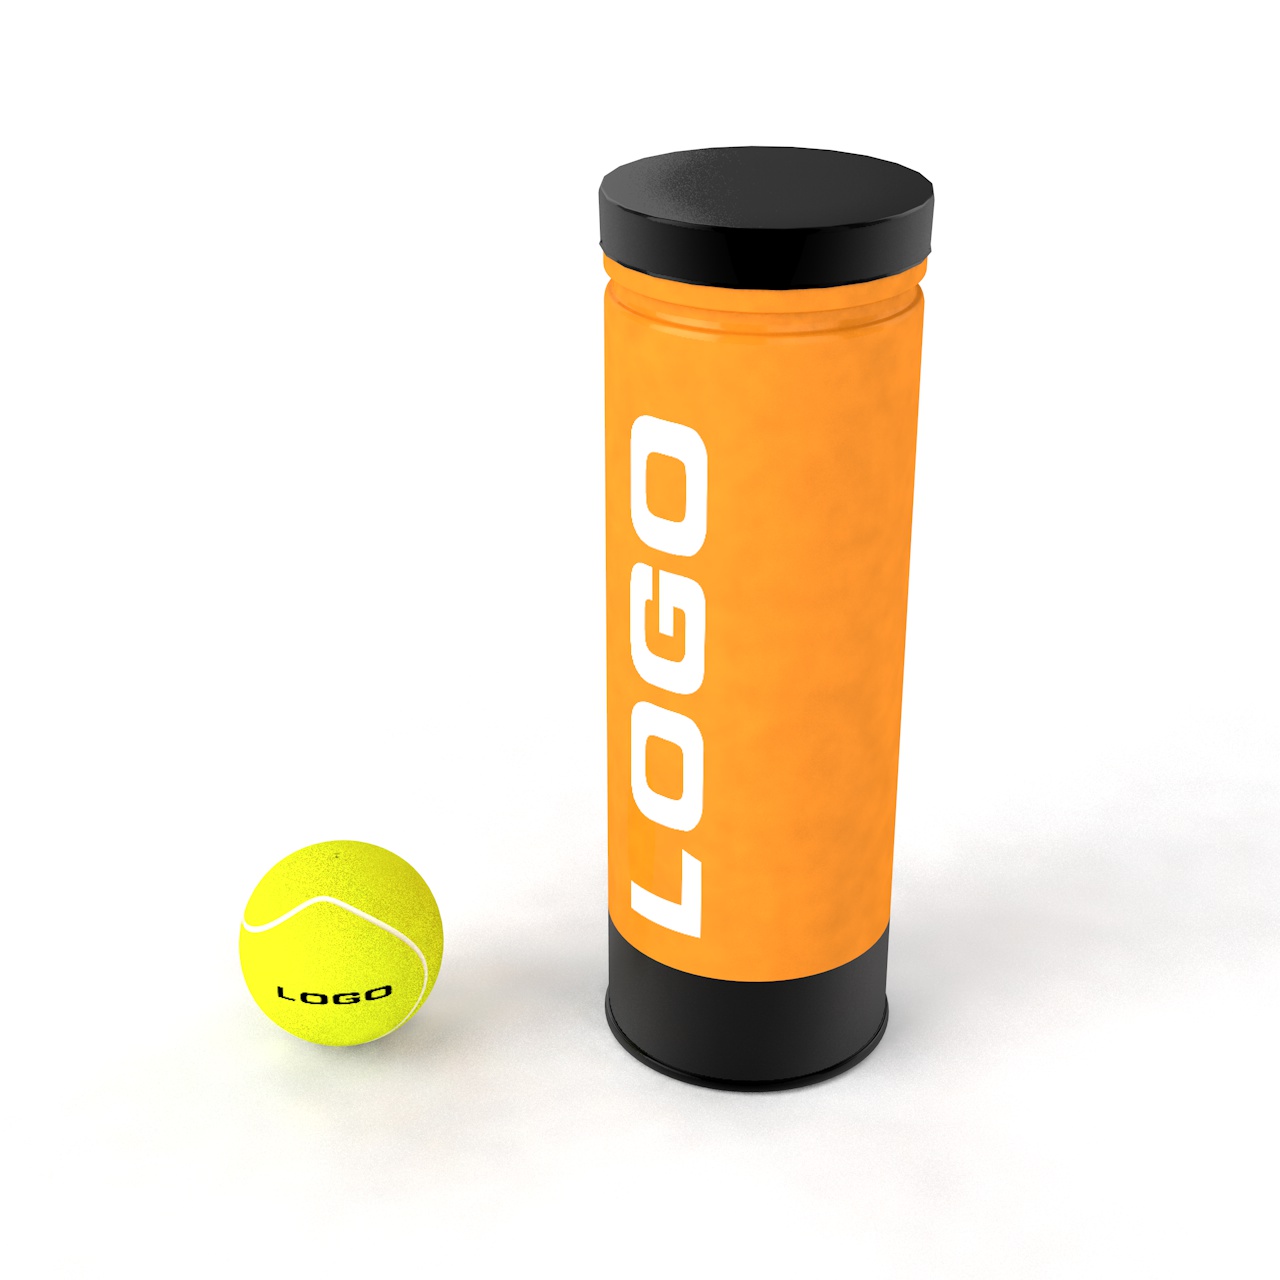 Teniška žoga Lahko 3d model